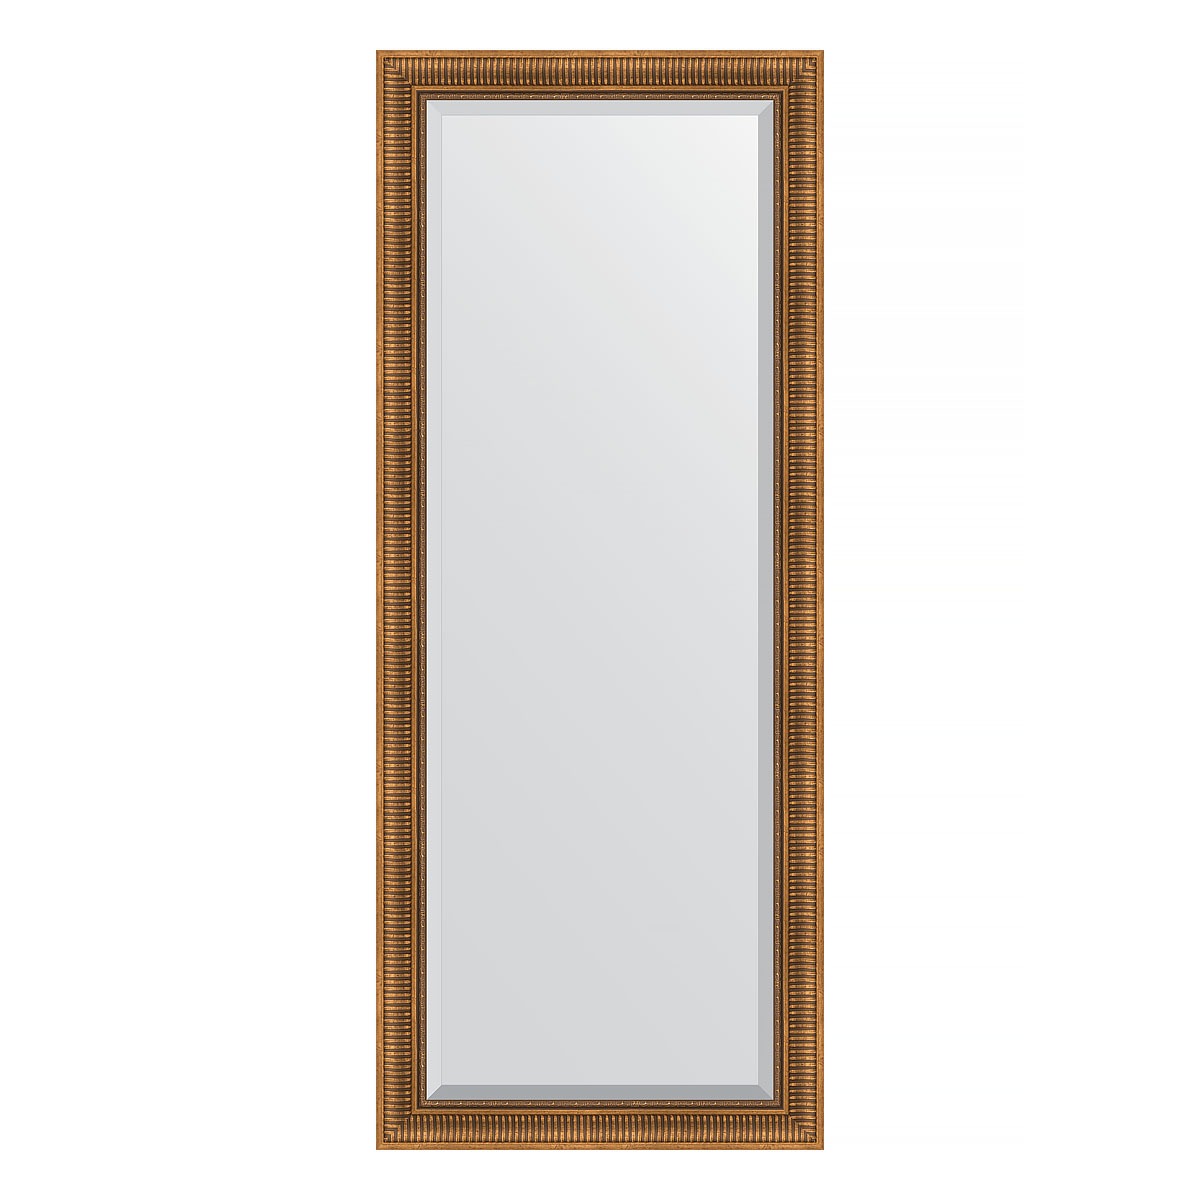 Зеркало напольное с фацетом в багетной раме Evoform бронзовый акведук 93 мм 82x202 см зеркало напольное с фацетом в багетной раме evoform бронзовый акведук 93 мм 82x202 см